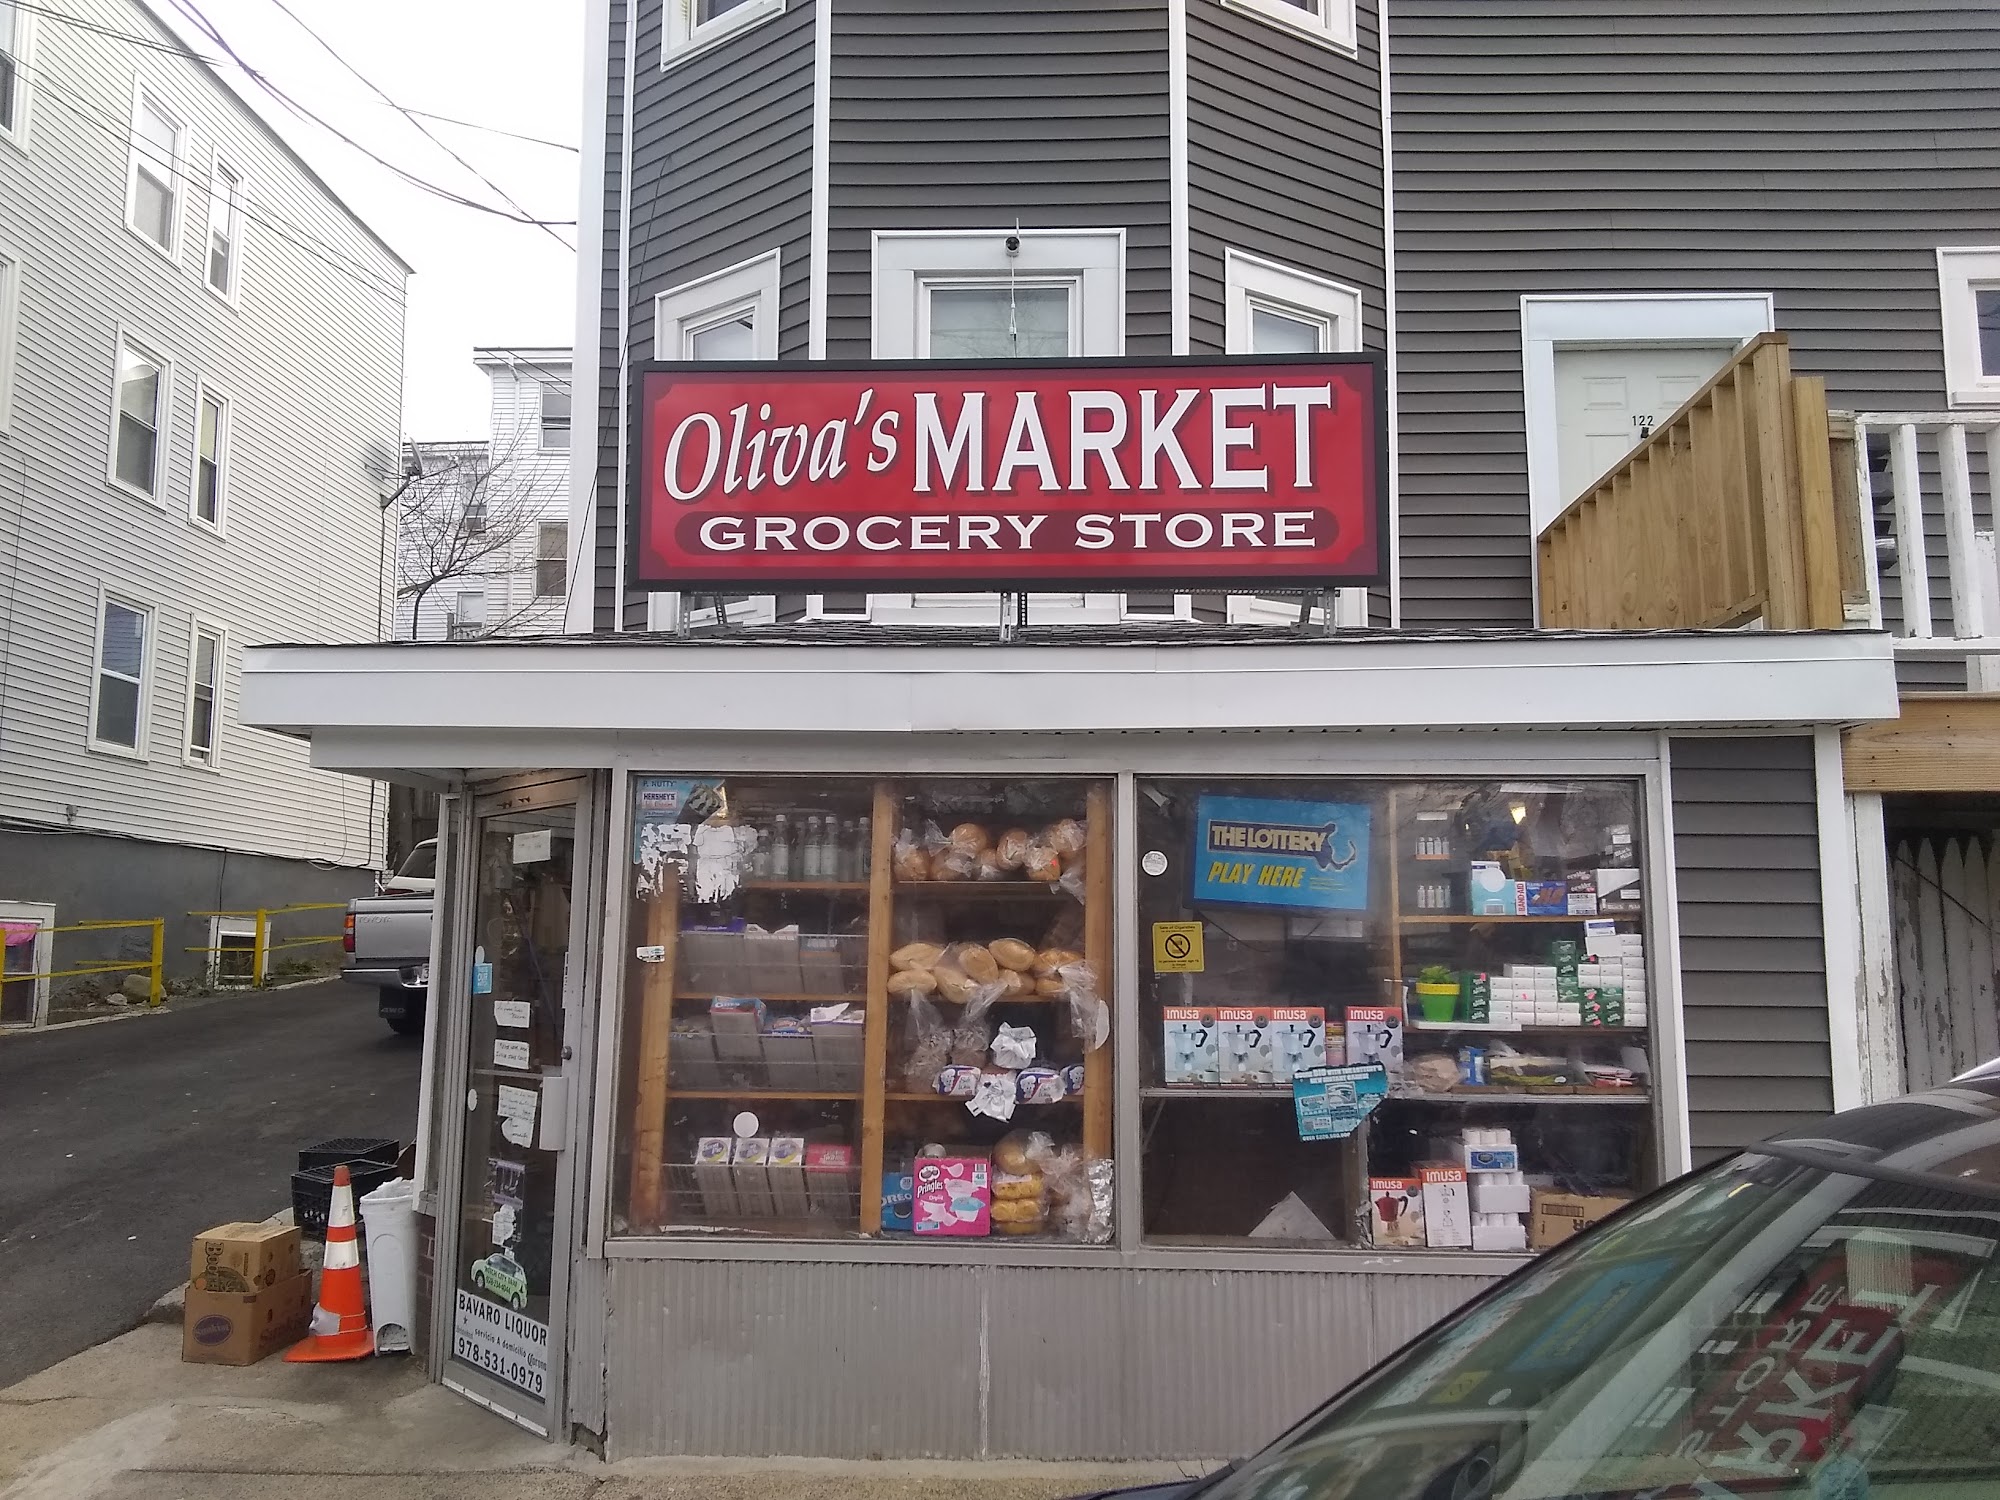 Oliva's Market